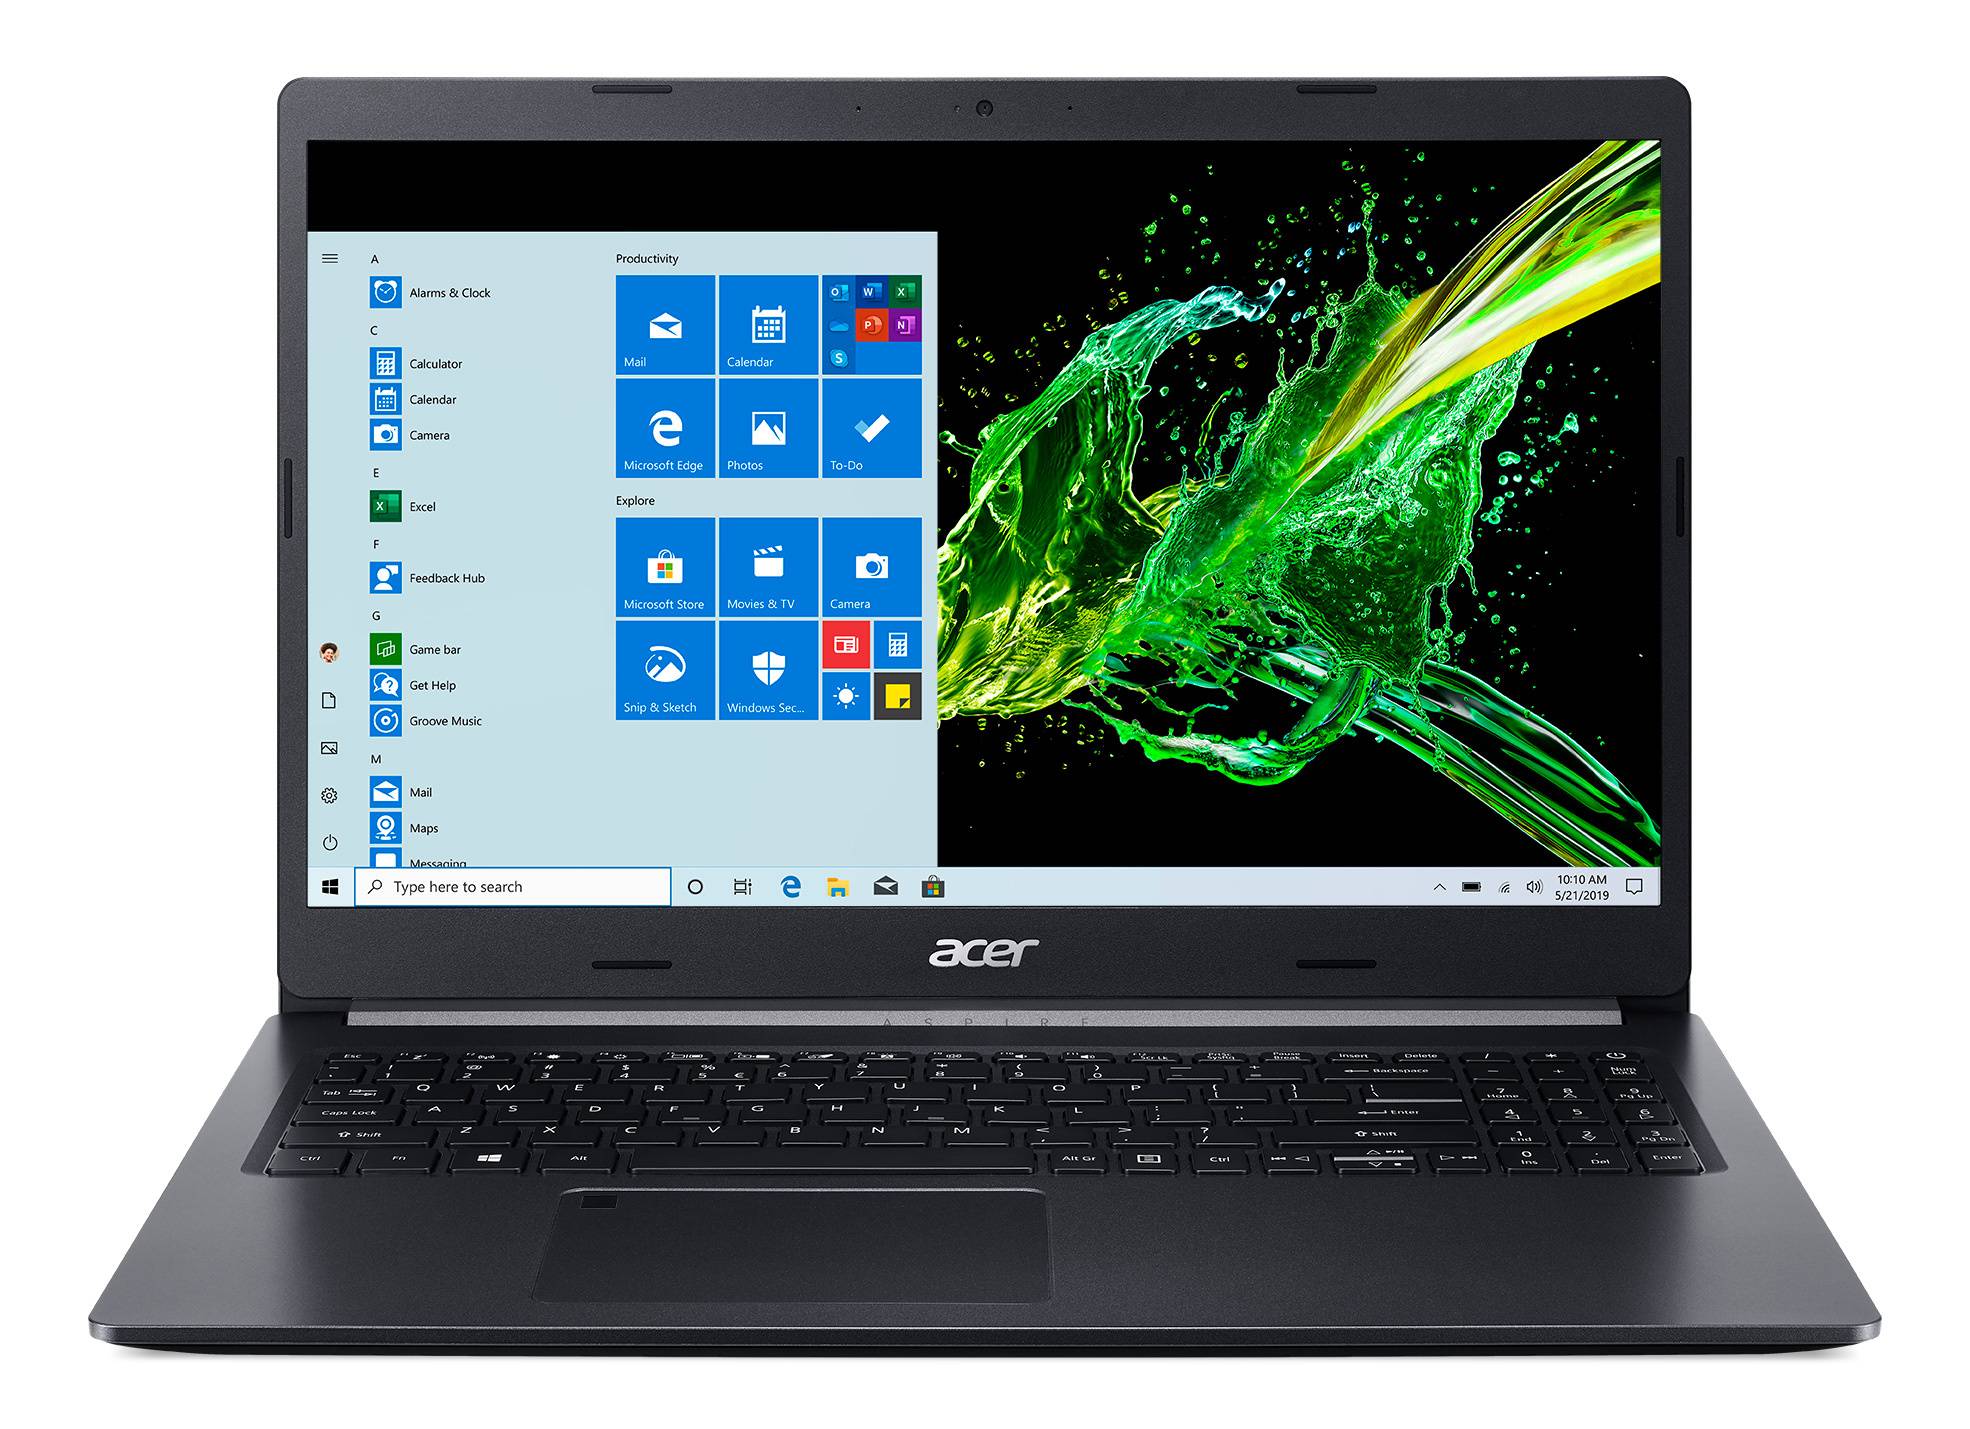 обзор ноутбука Acer Aspire V5-573G-54208G50aii Intel Core i5 4200U, NVIDIA GeForce GT 750M, 153, 2 kg с различными бенчмарками, тестами и оценками